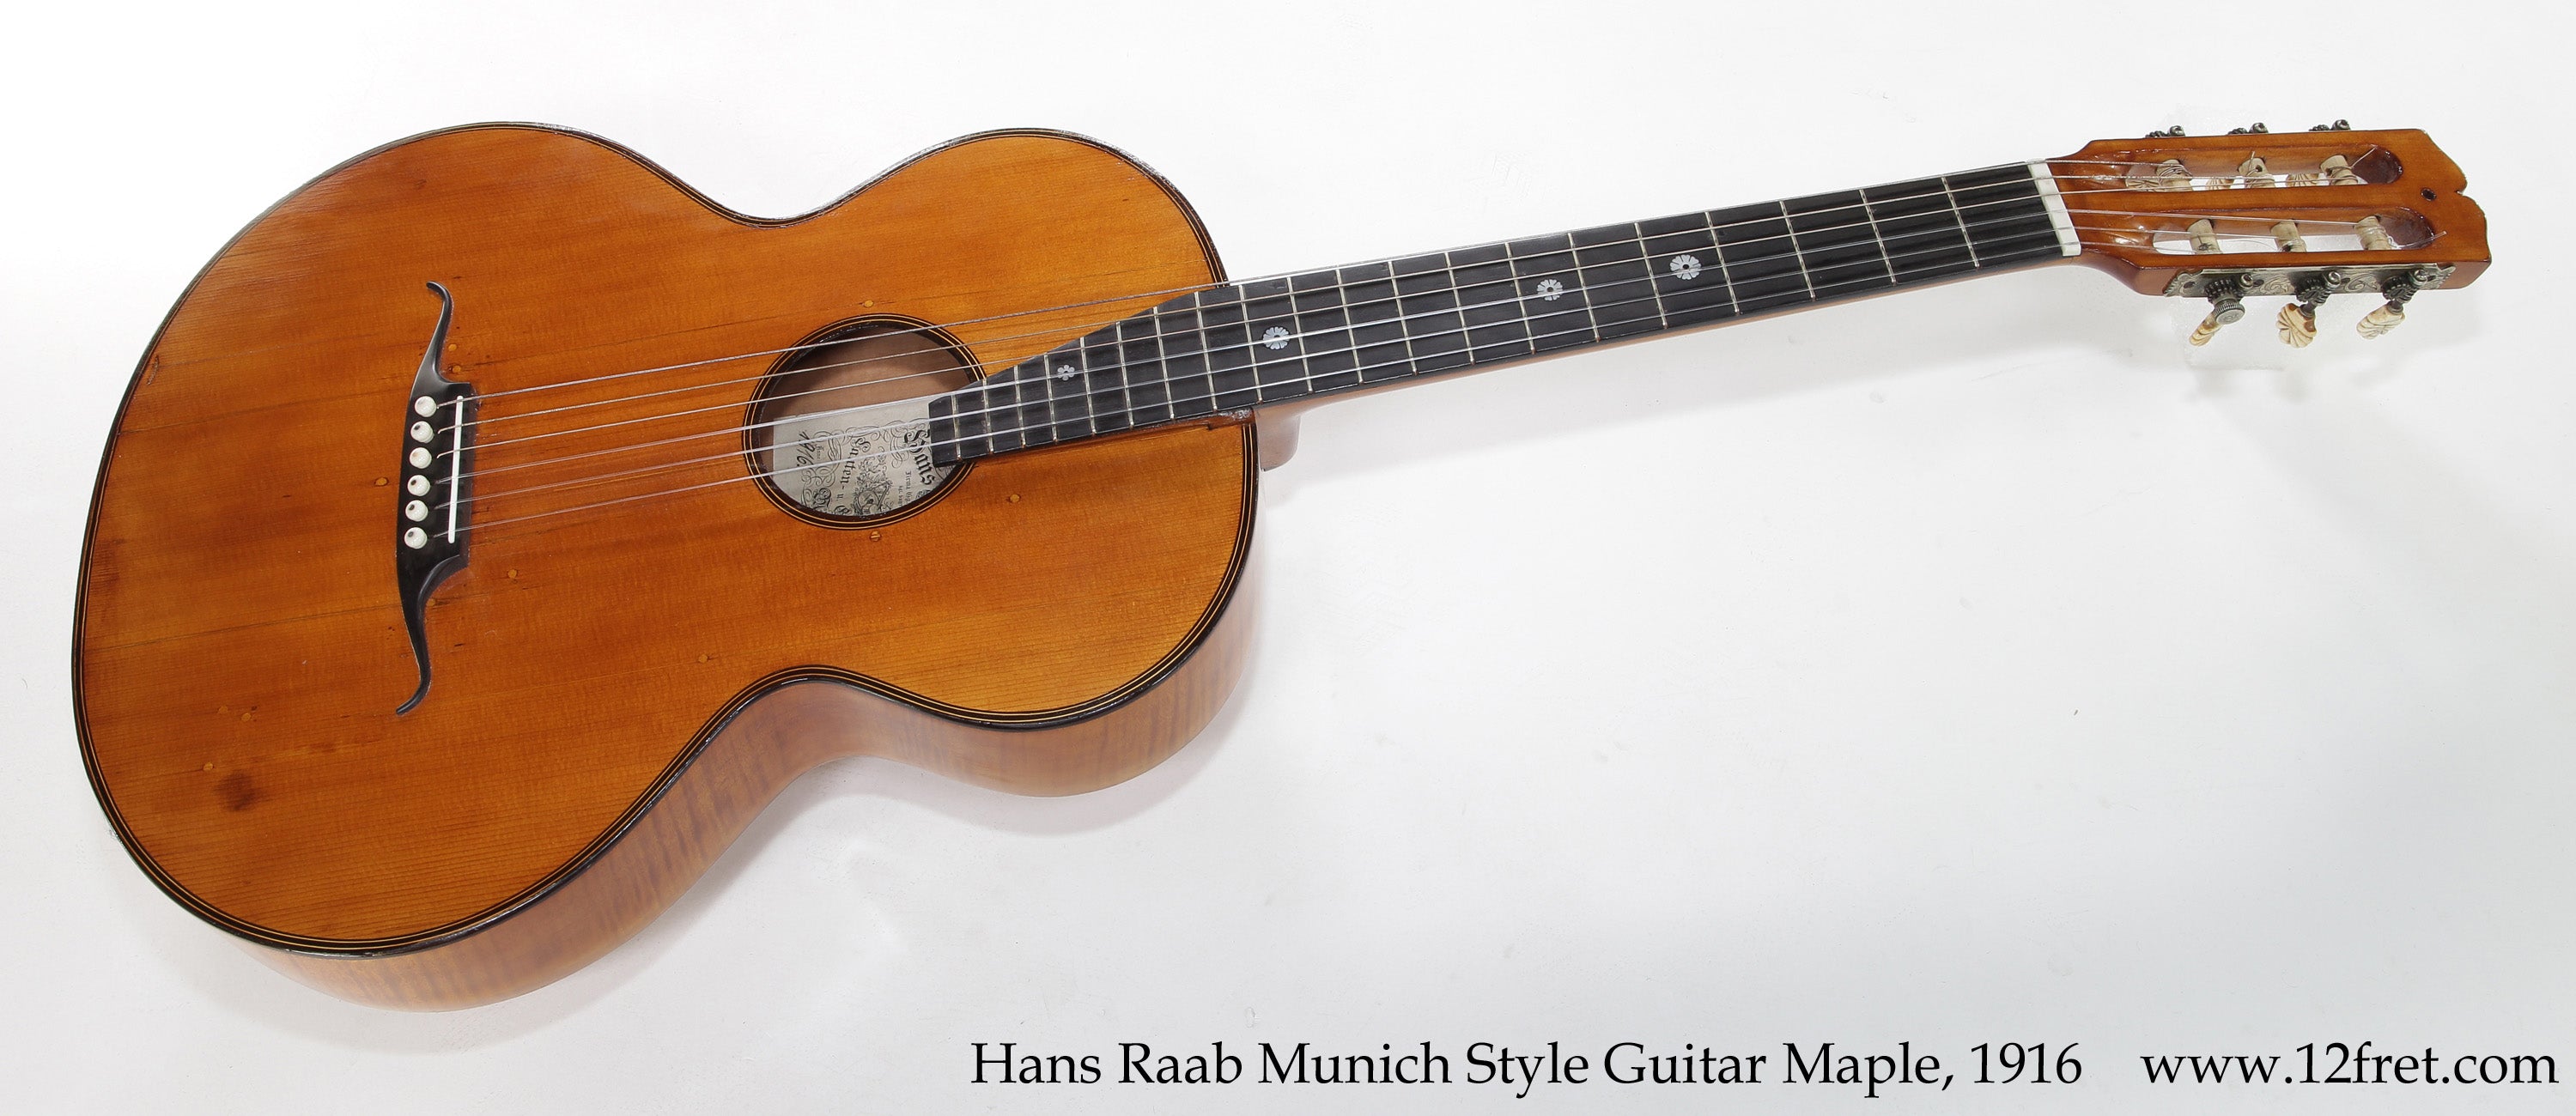 Hans Raab Munich Style Guitar Maple, 1916 - The Twelfth Fret